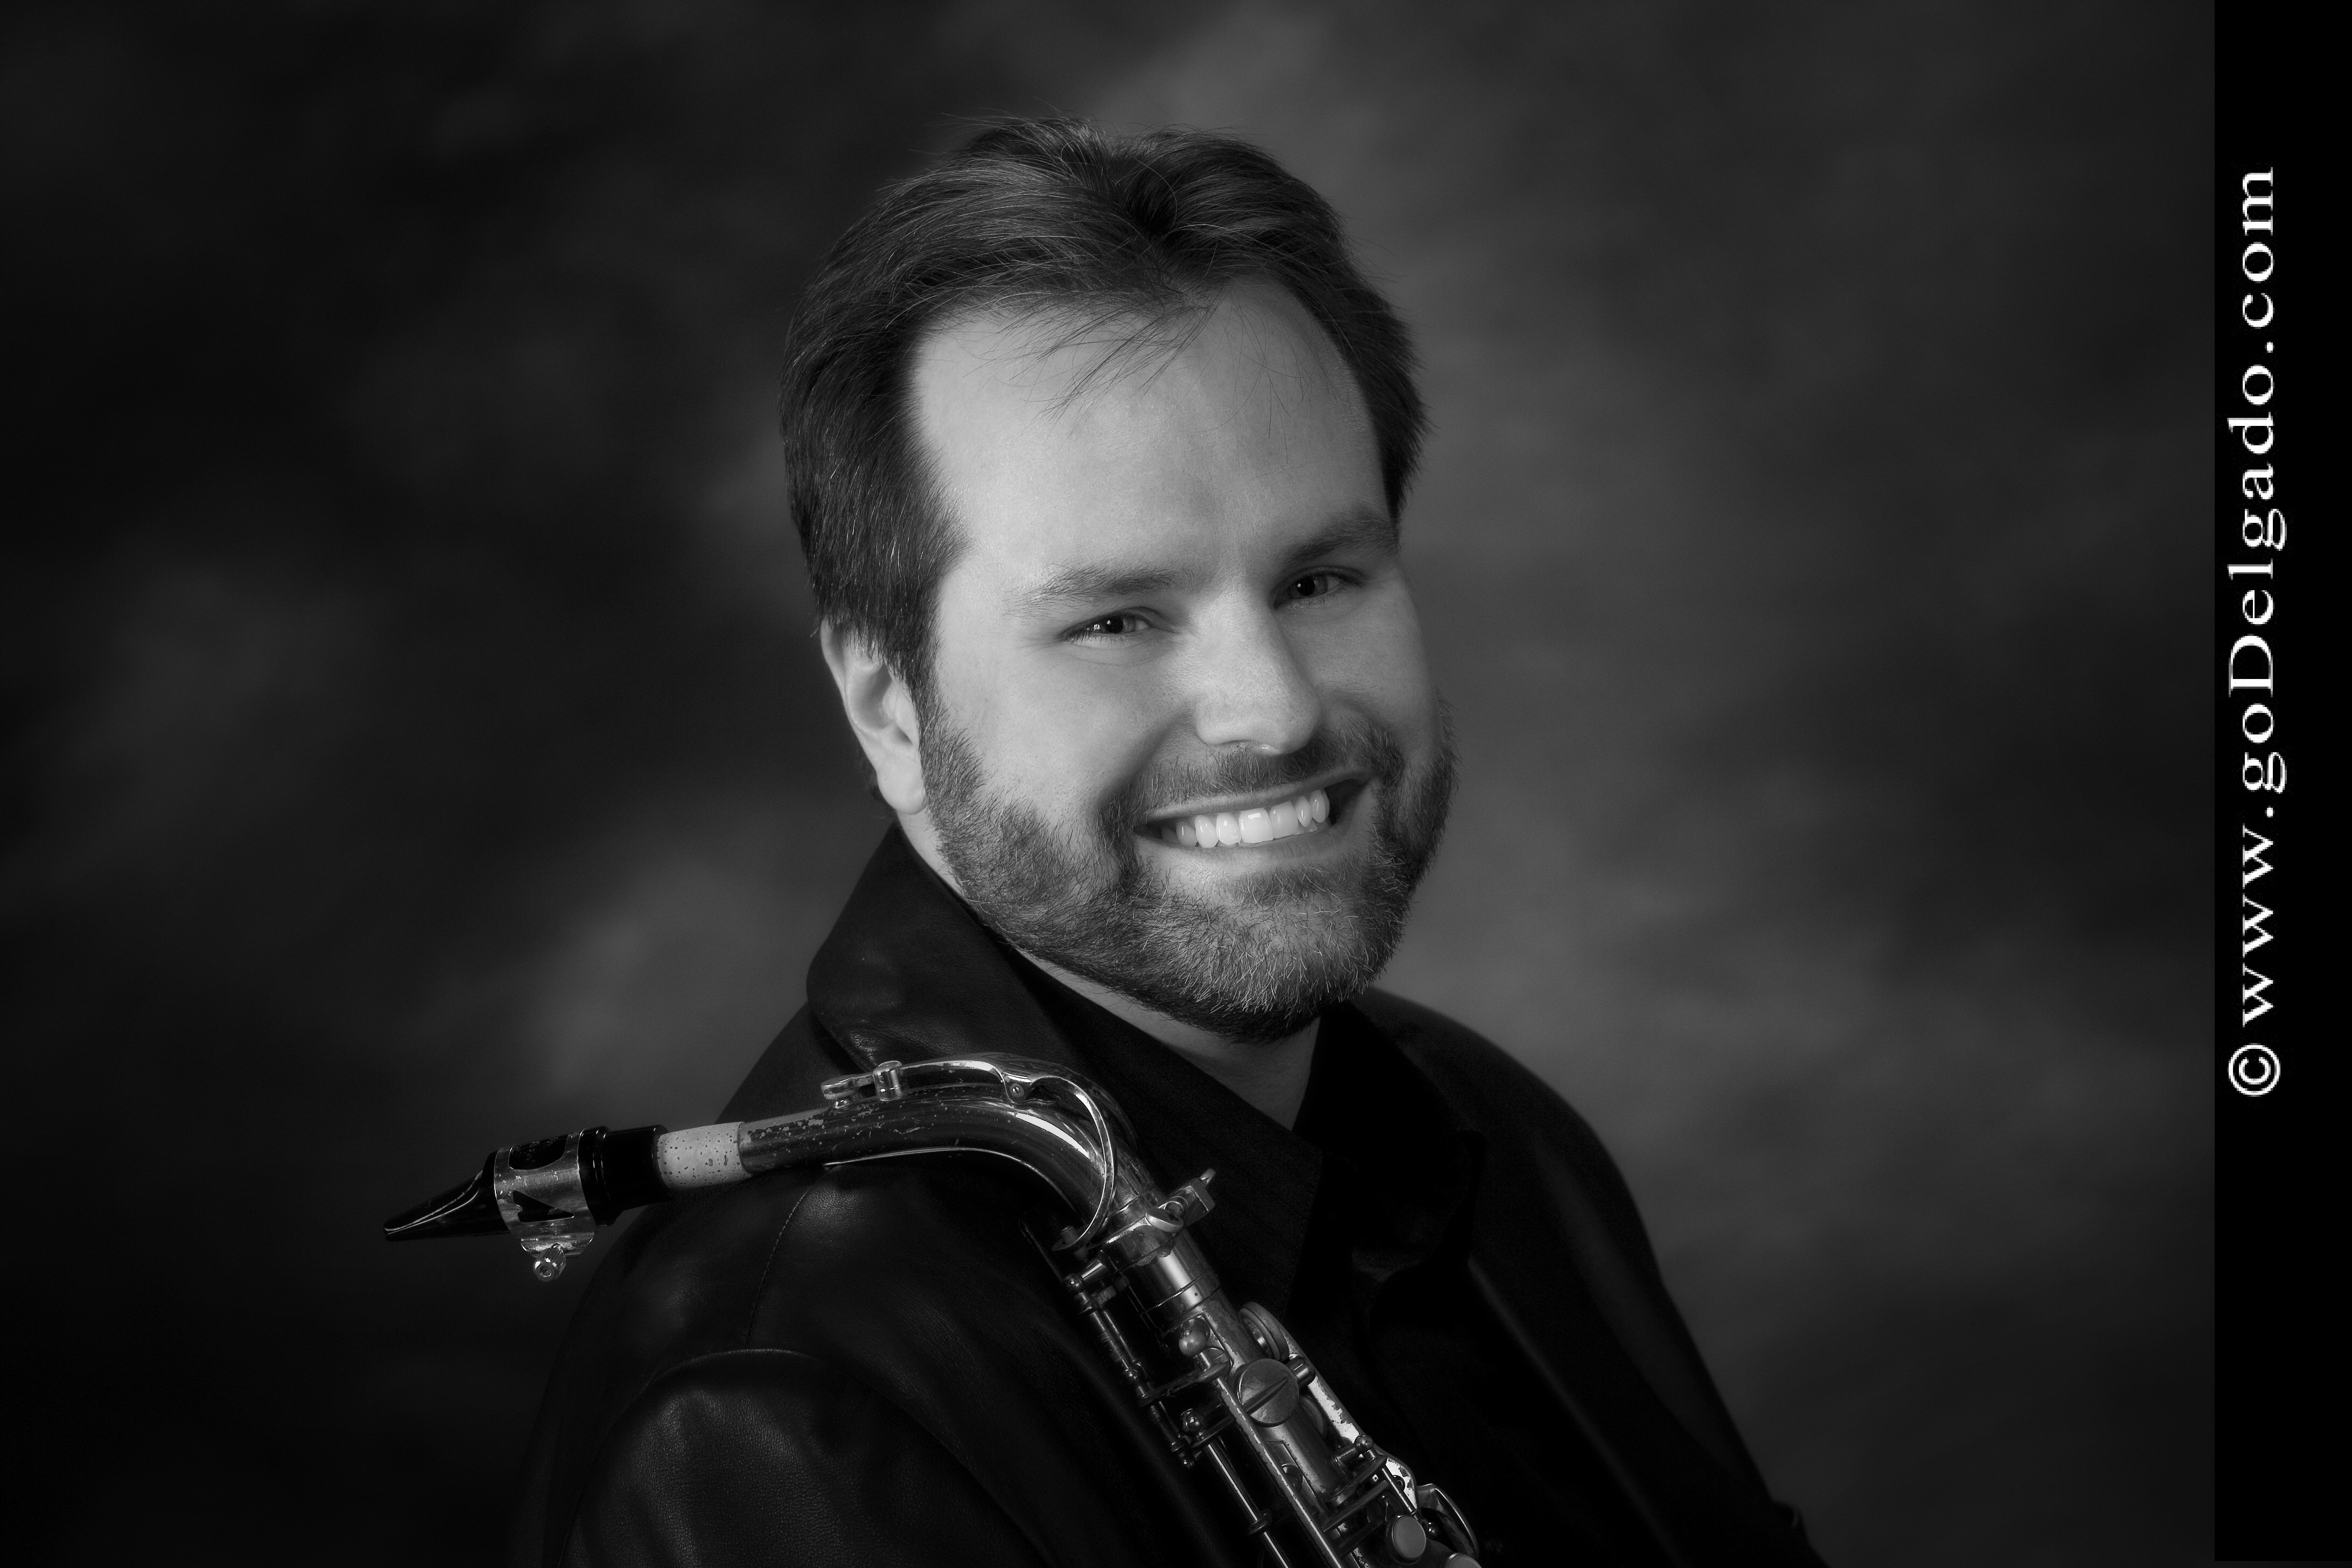 www.scooby-sax.com Jeff Rzepiela jazz saxophone transcriptions